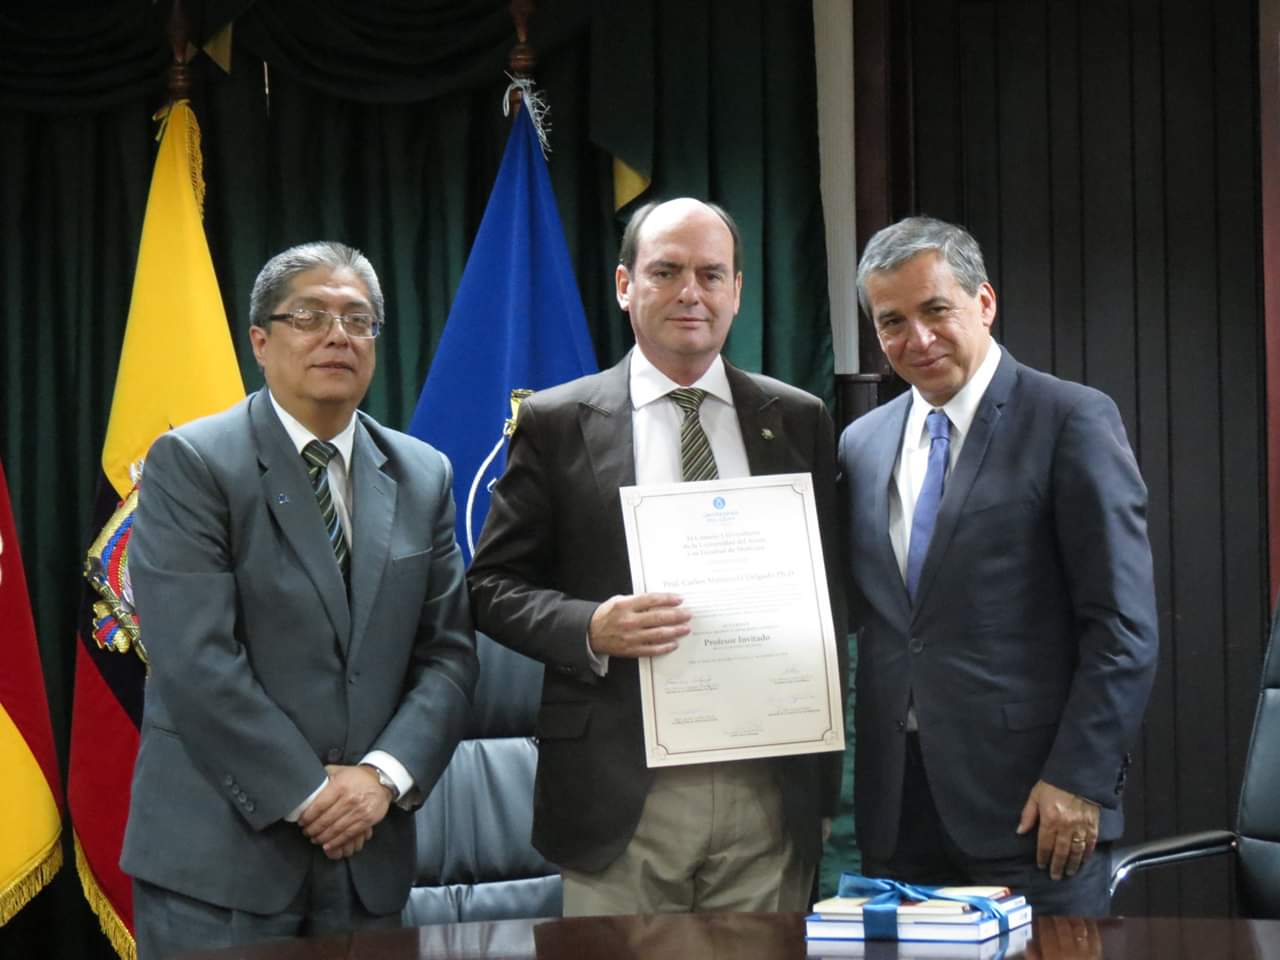 Prof. Carlos Manterola, Universidad de la Frontera de Chile